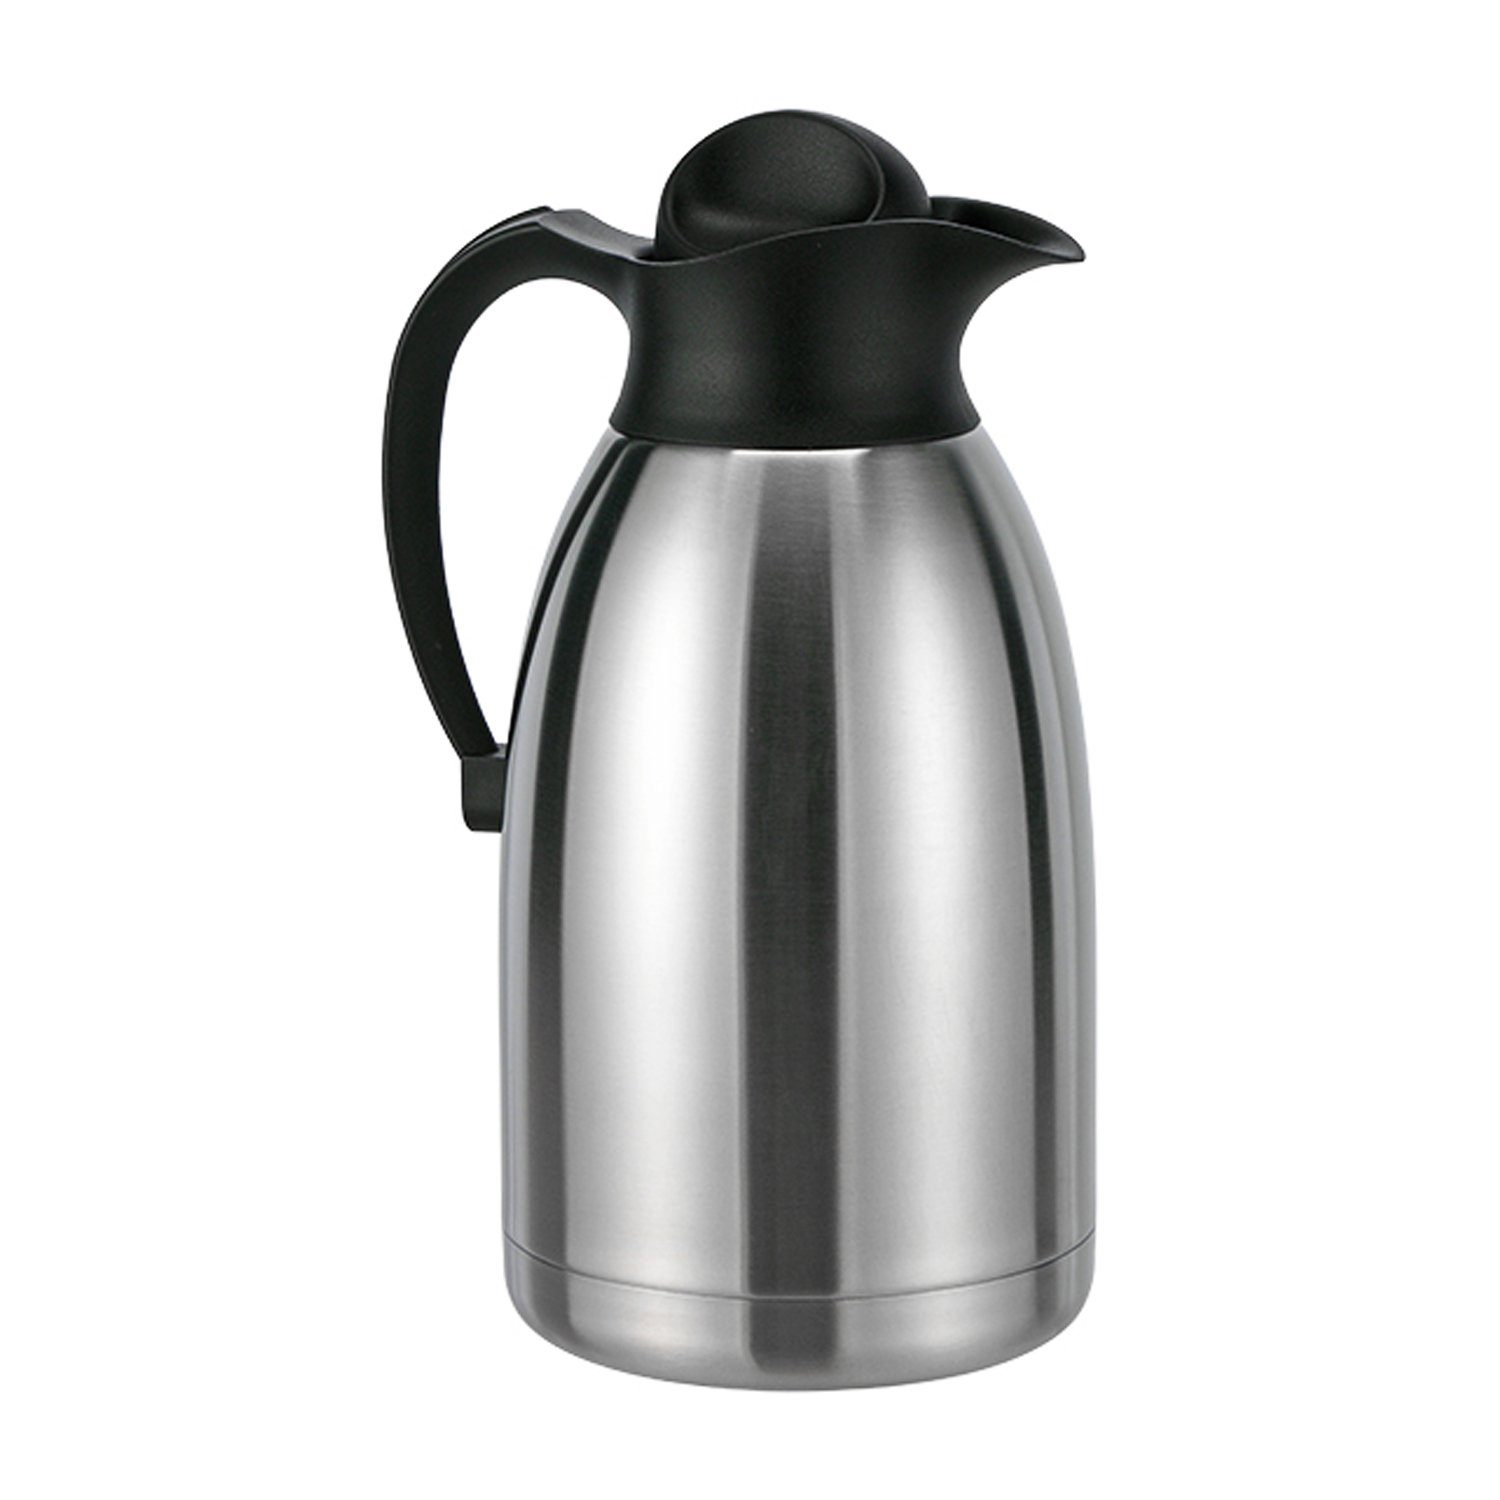 Mojawo Thermobehälter 2 Liter Doppelwandig Edelstahl Kaffeekanne Thermoskanne Isolierkanne